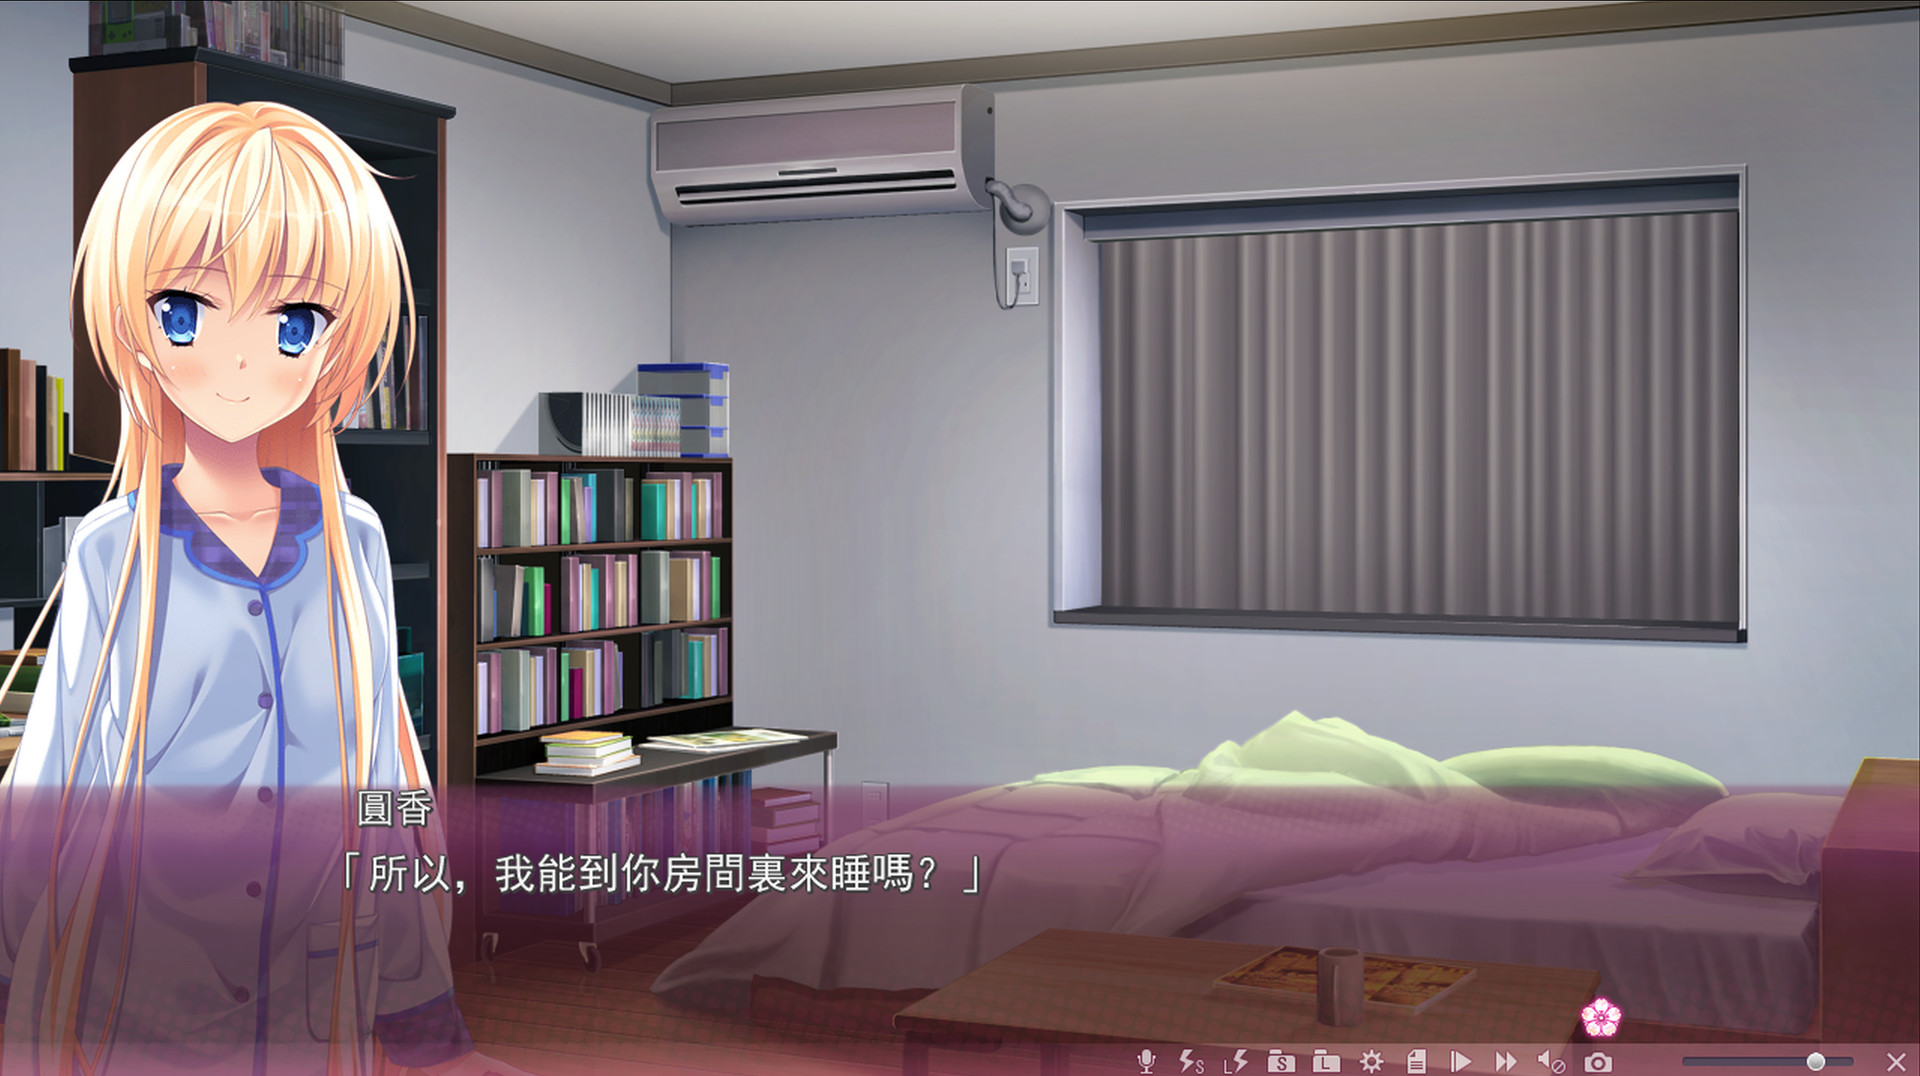 Sakura no Mori † Dreamers2(Traditional Chinese) - Visual Novel - 2 - Select